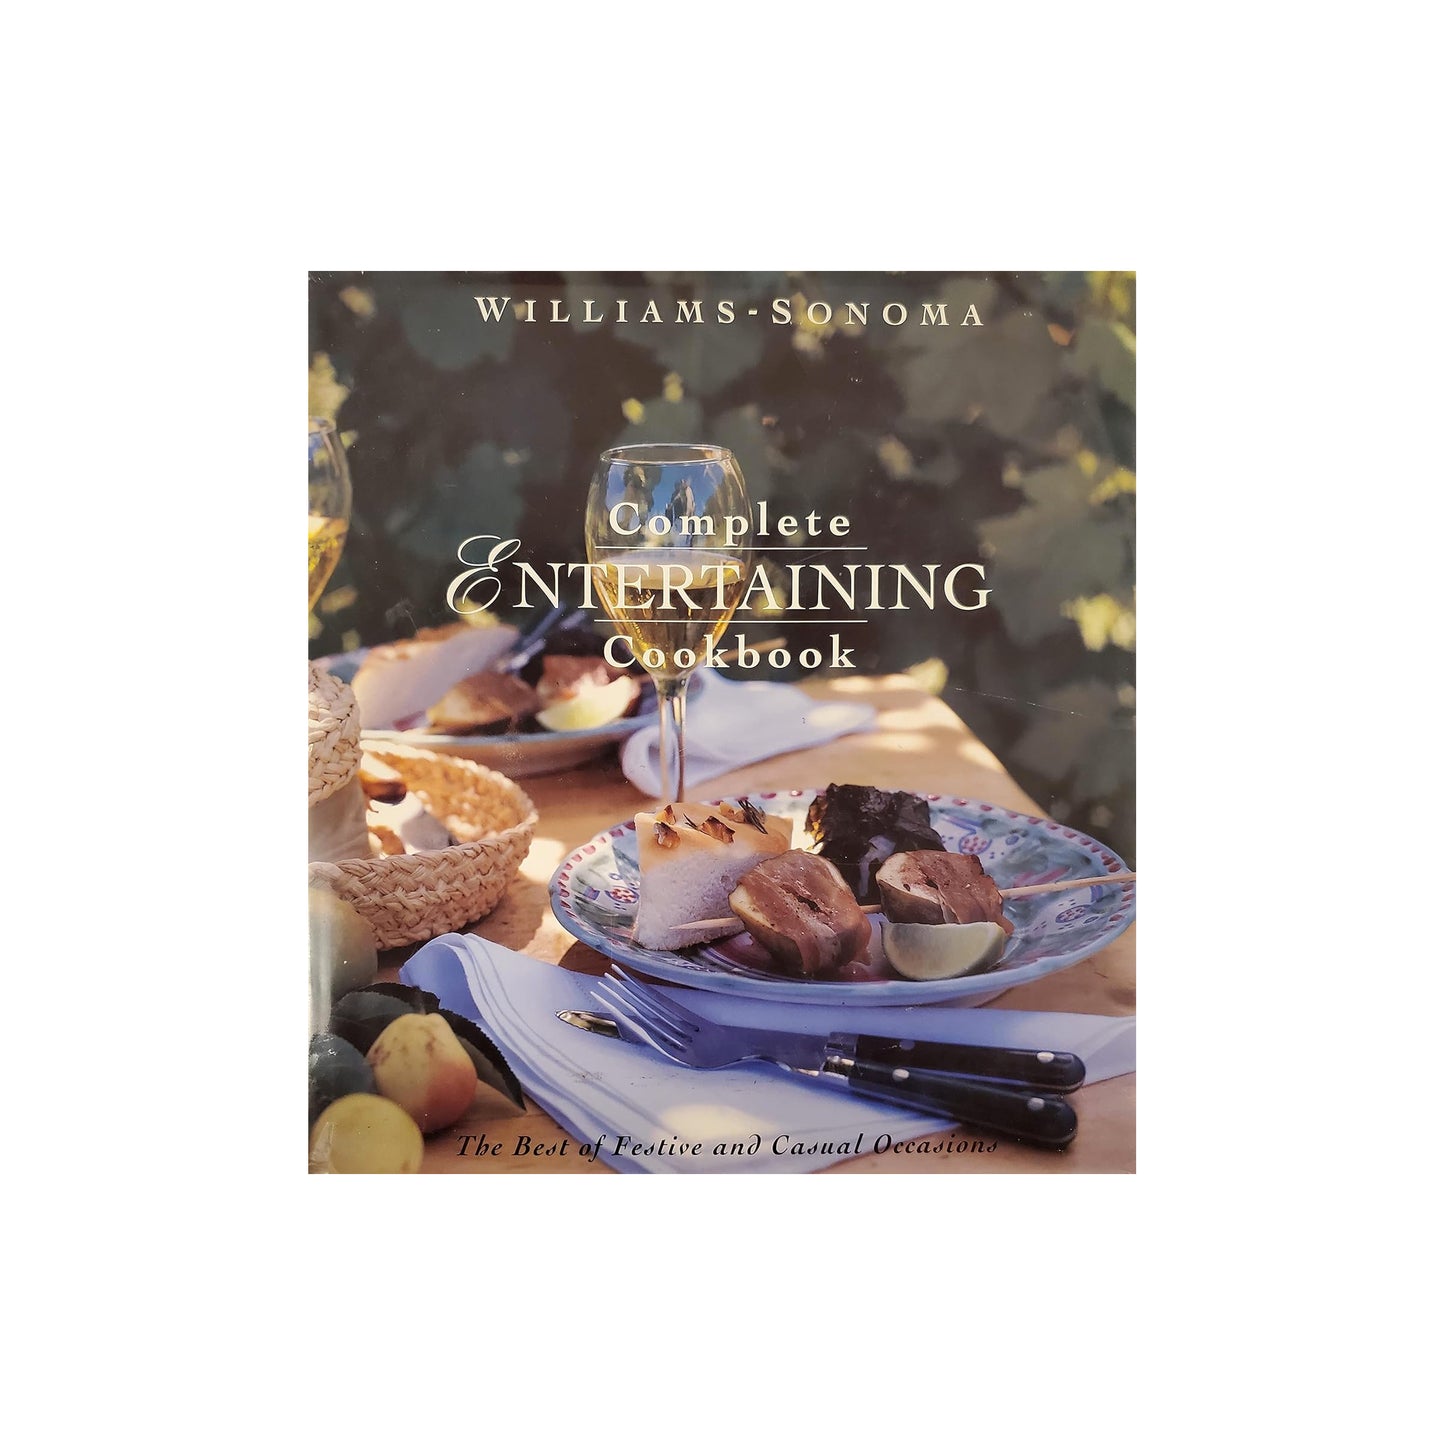 William Sonoma - Complete Entertaining Cookbook